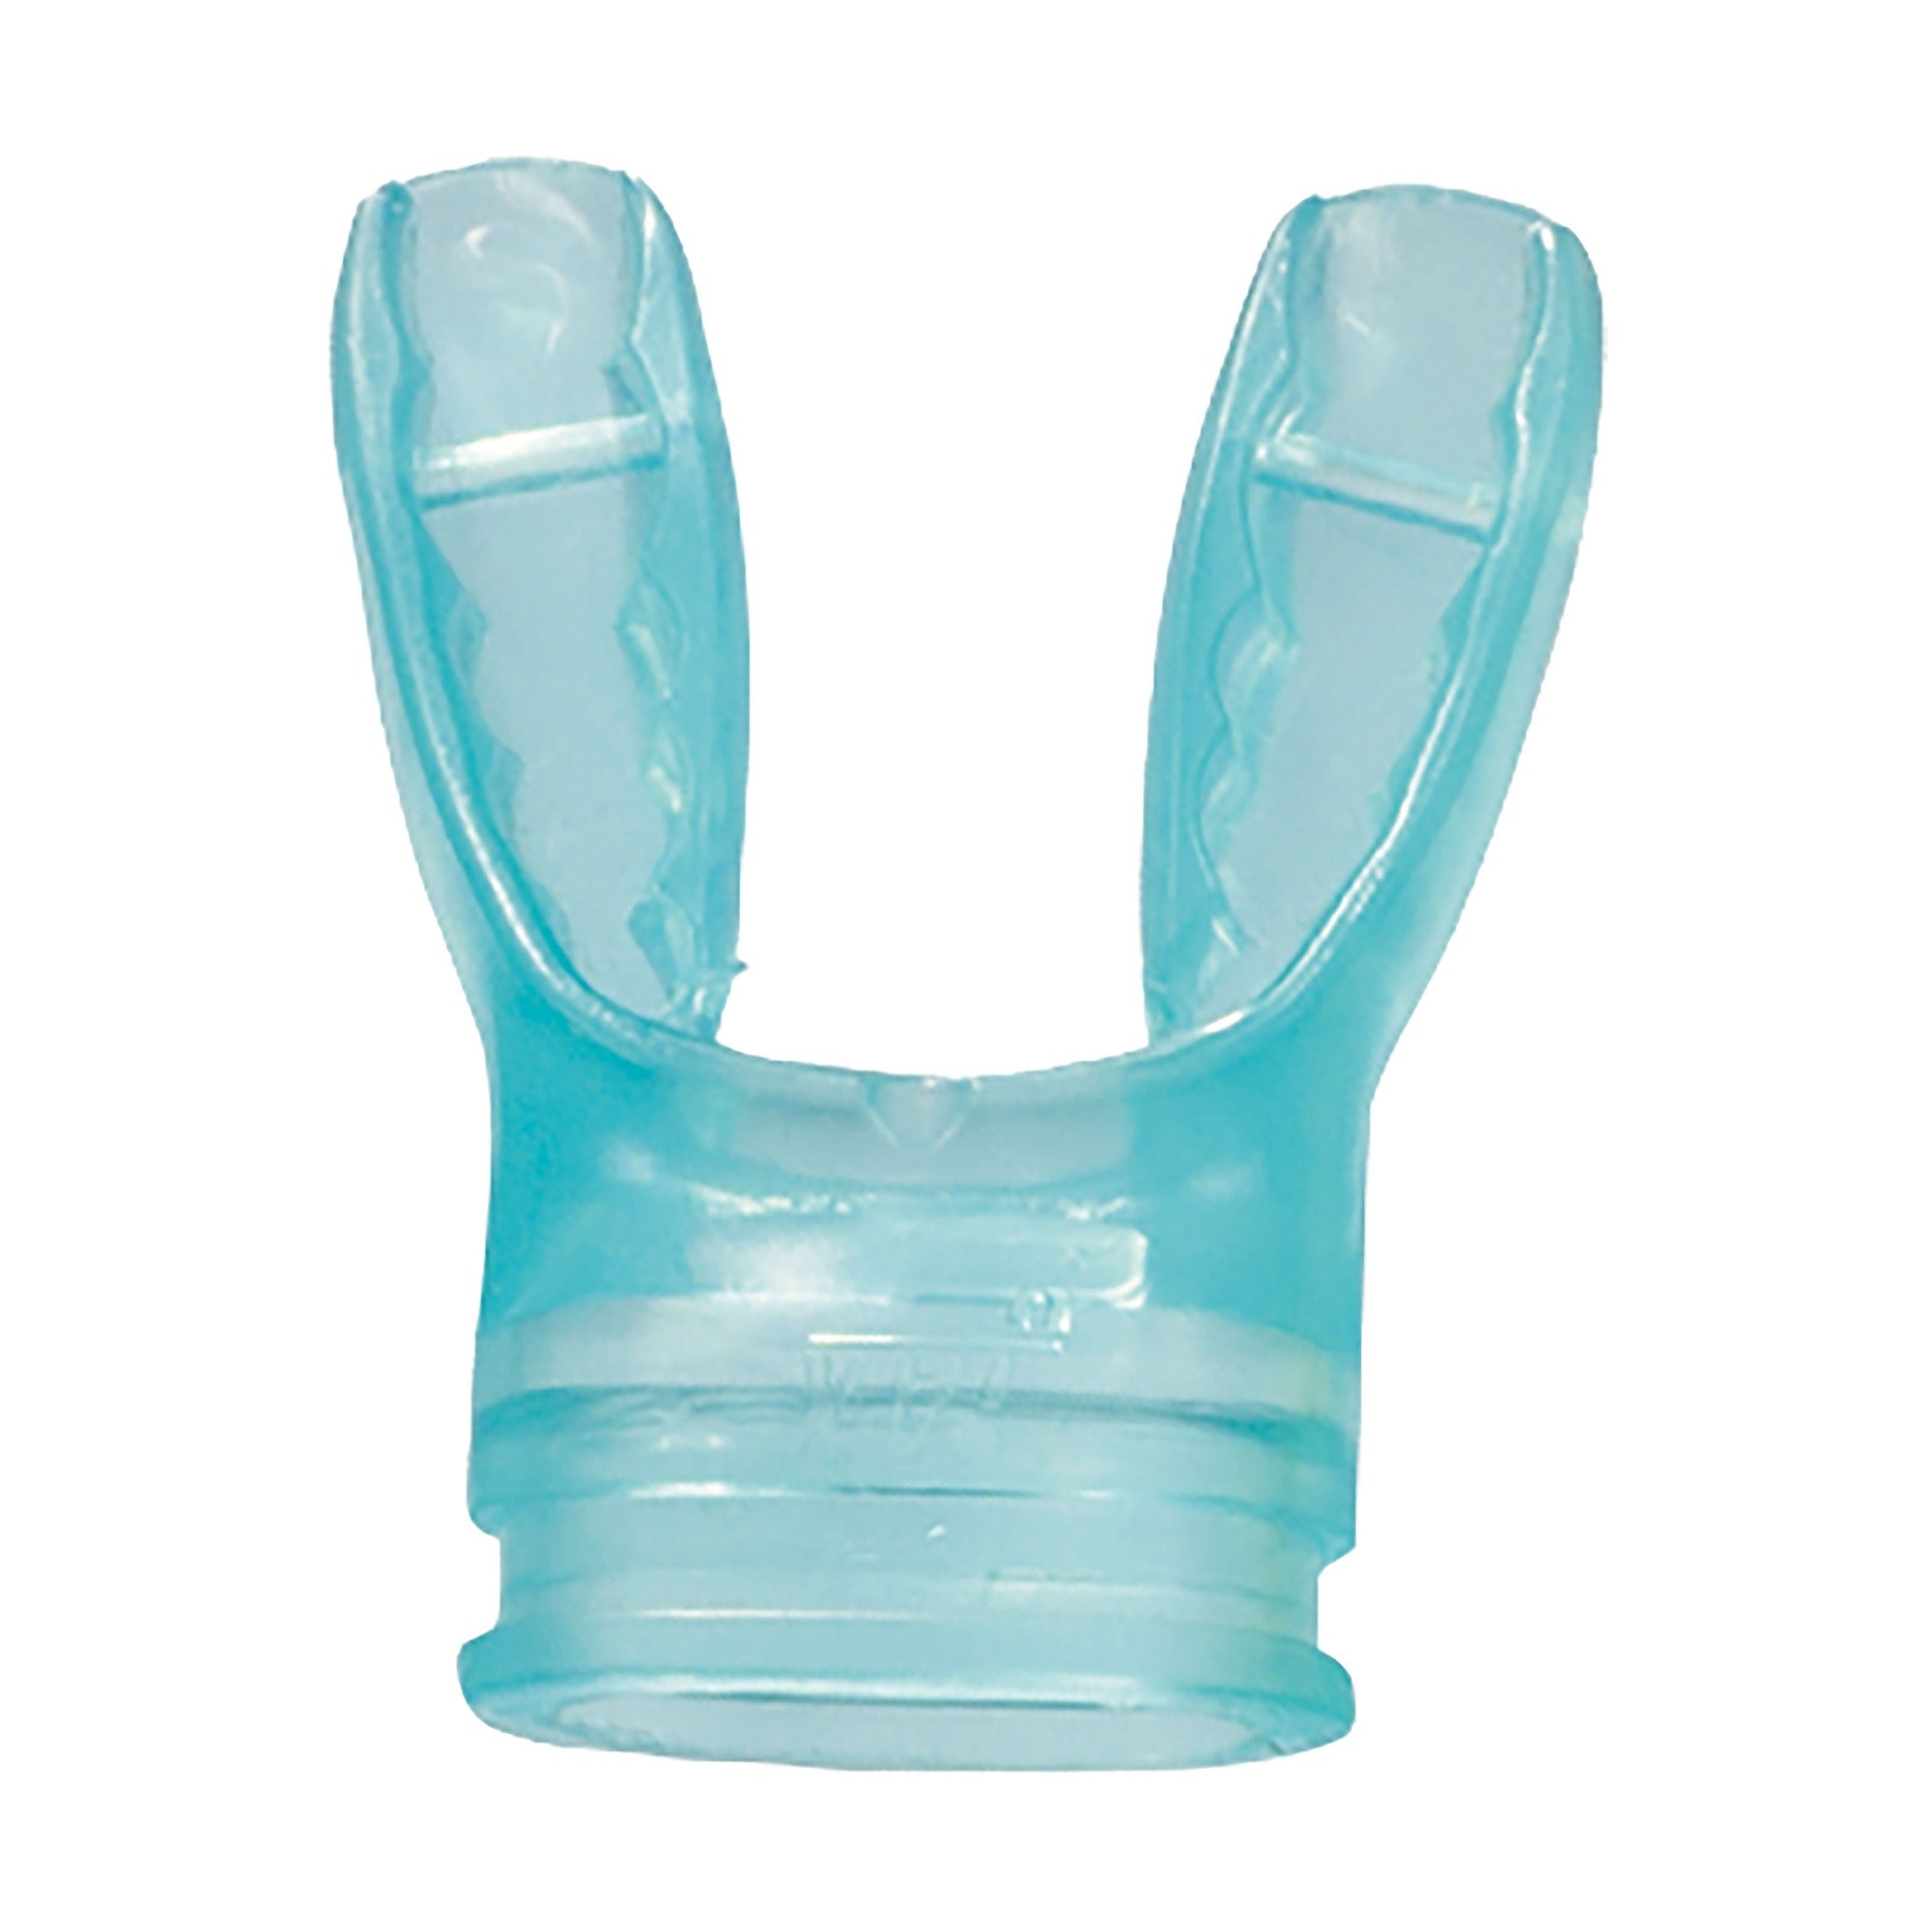 Das Jax Mundstück ist ein anpassbares Mundstück für Atemregler von Mares. In verschiedenen Farben erhältlich.